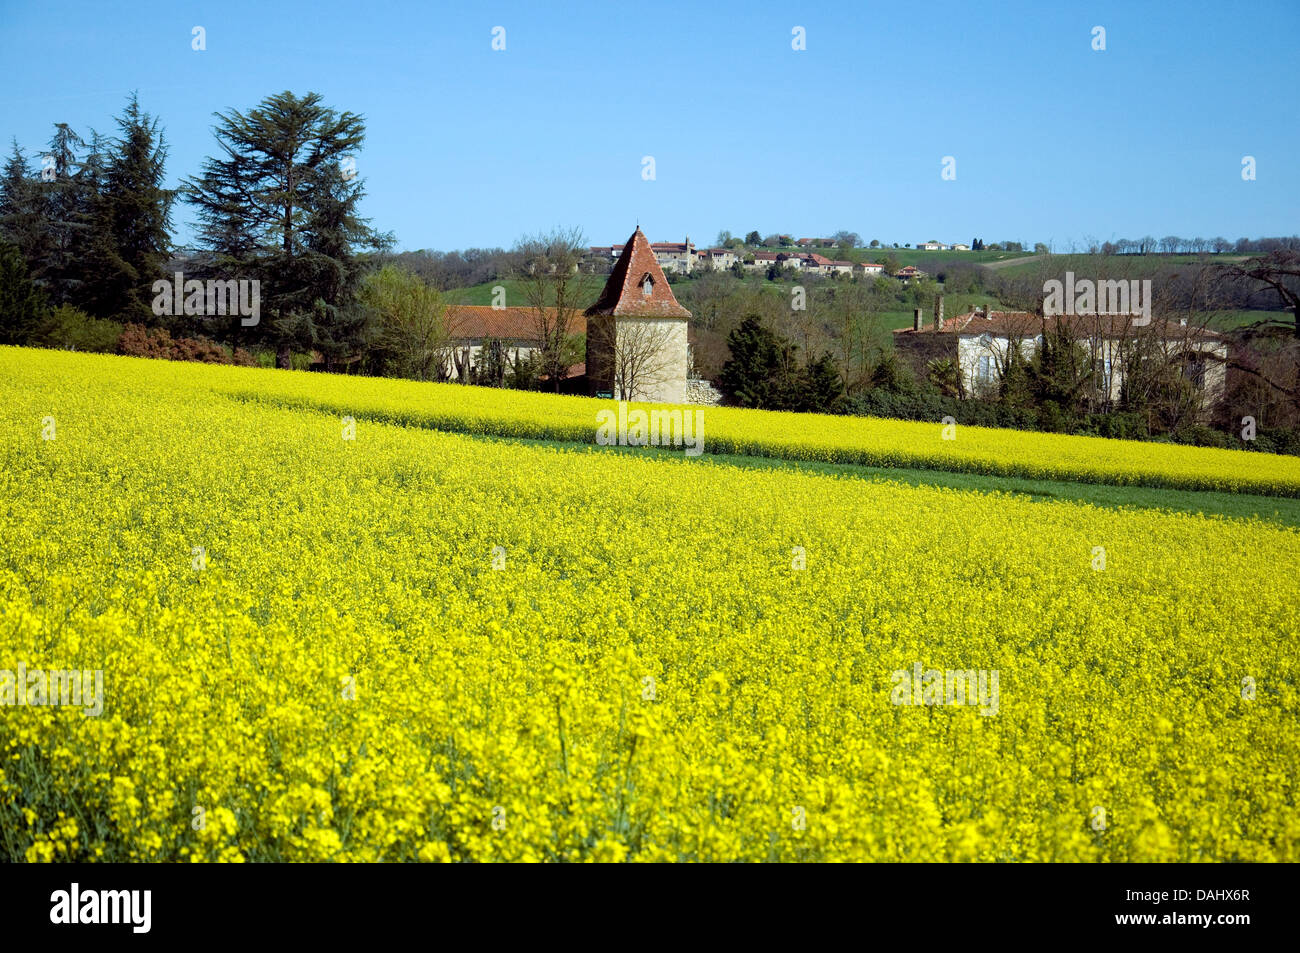 Im Südwesten Frankreichs ist eine blühende Feld neben einem Landhaus im Frühling ein Ausbruch von gelben Raps - Raps Stockfoto